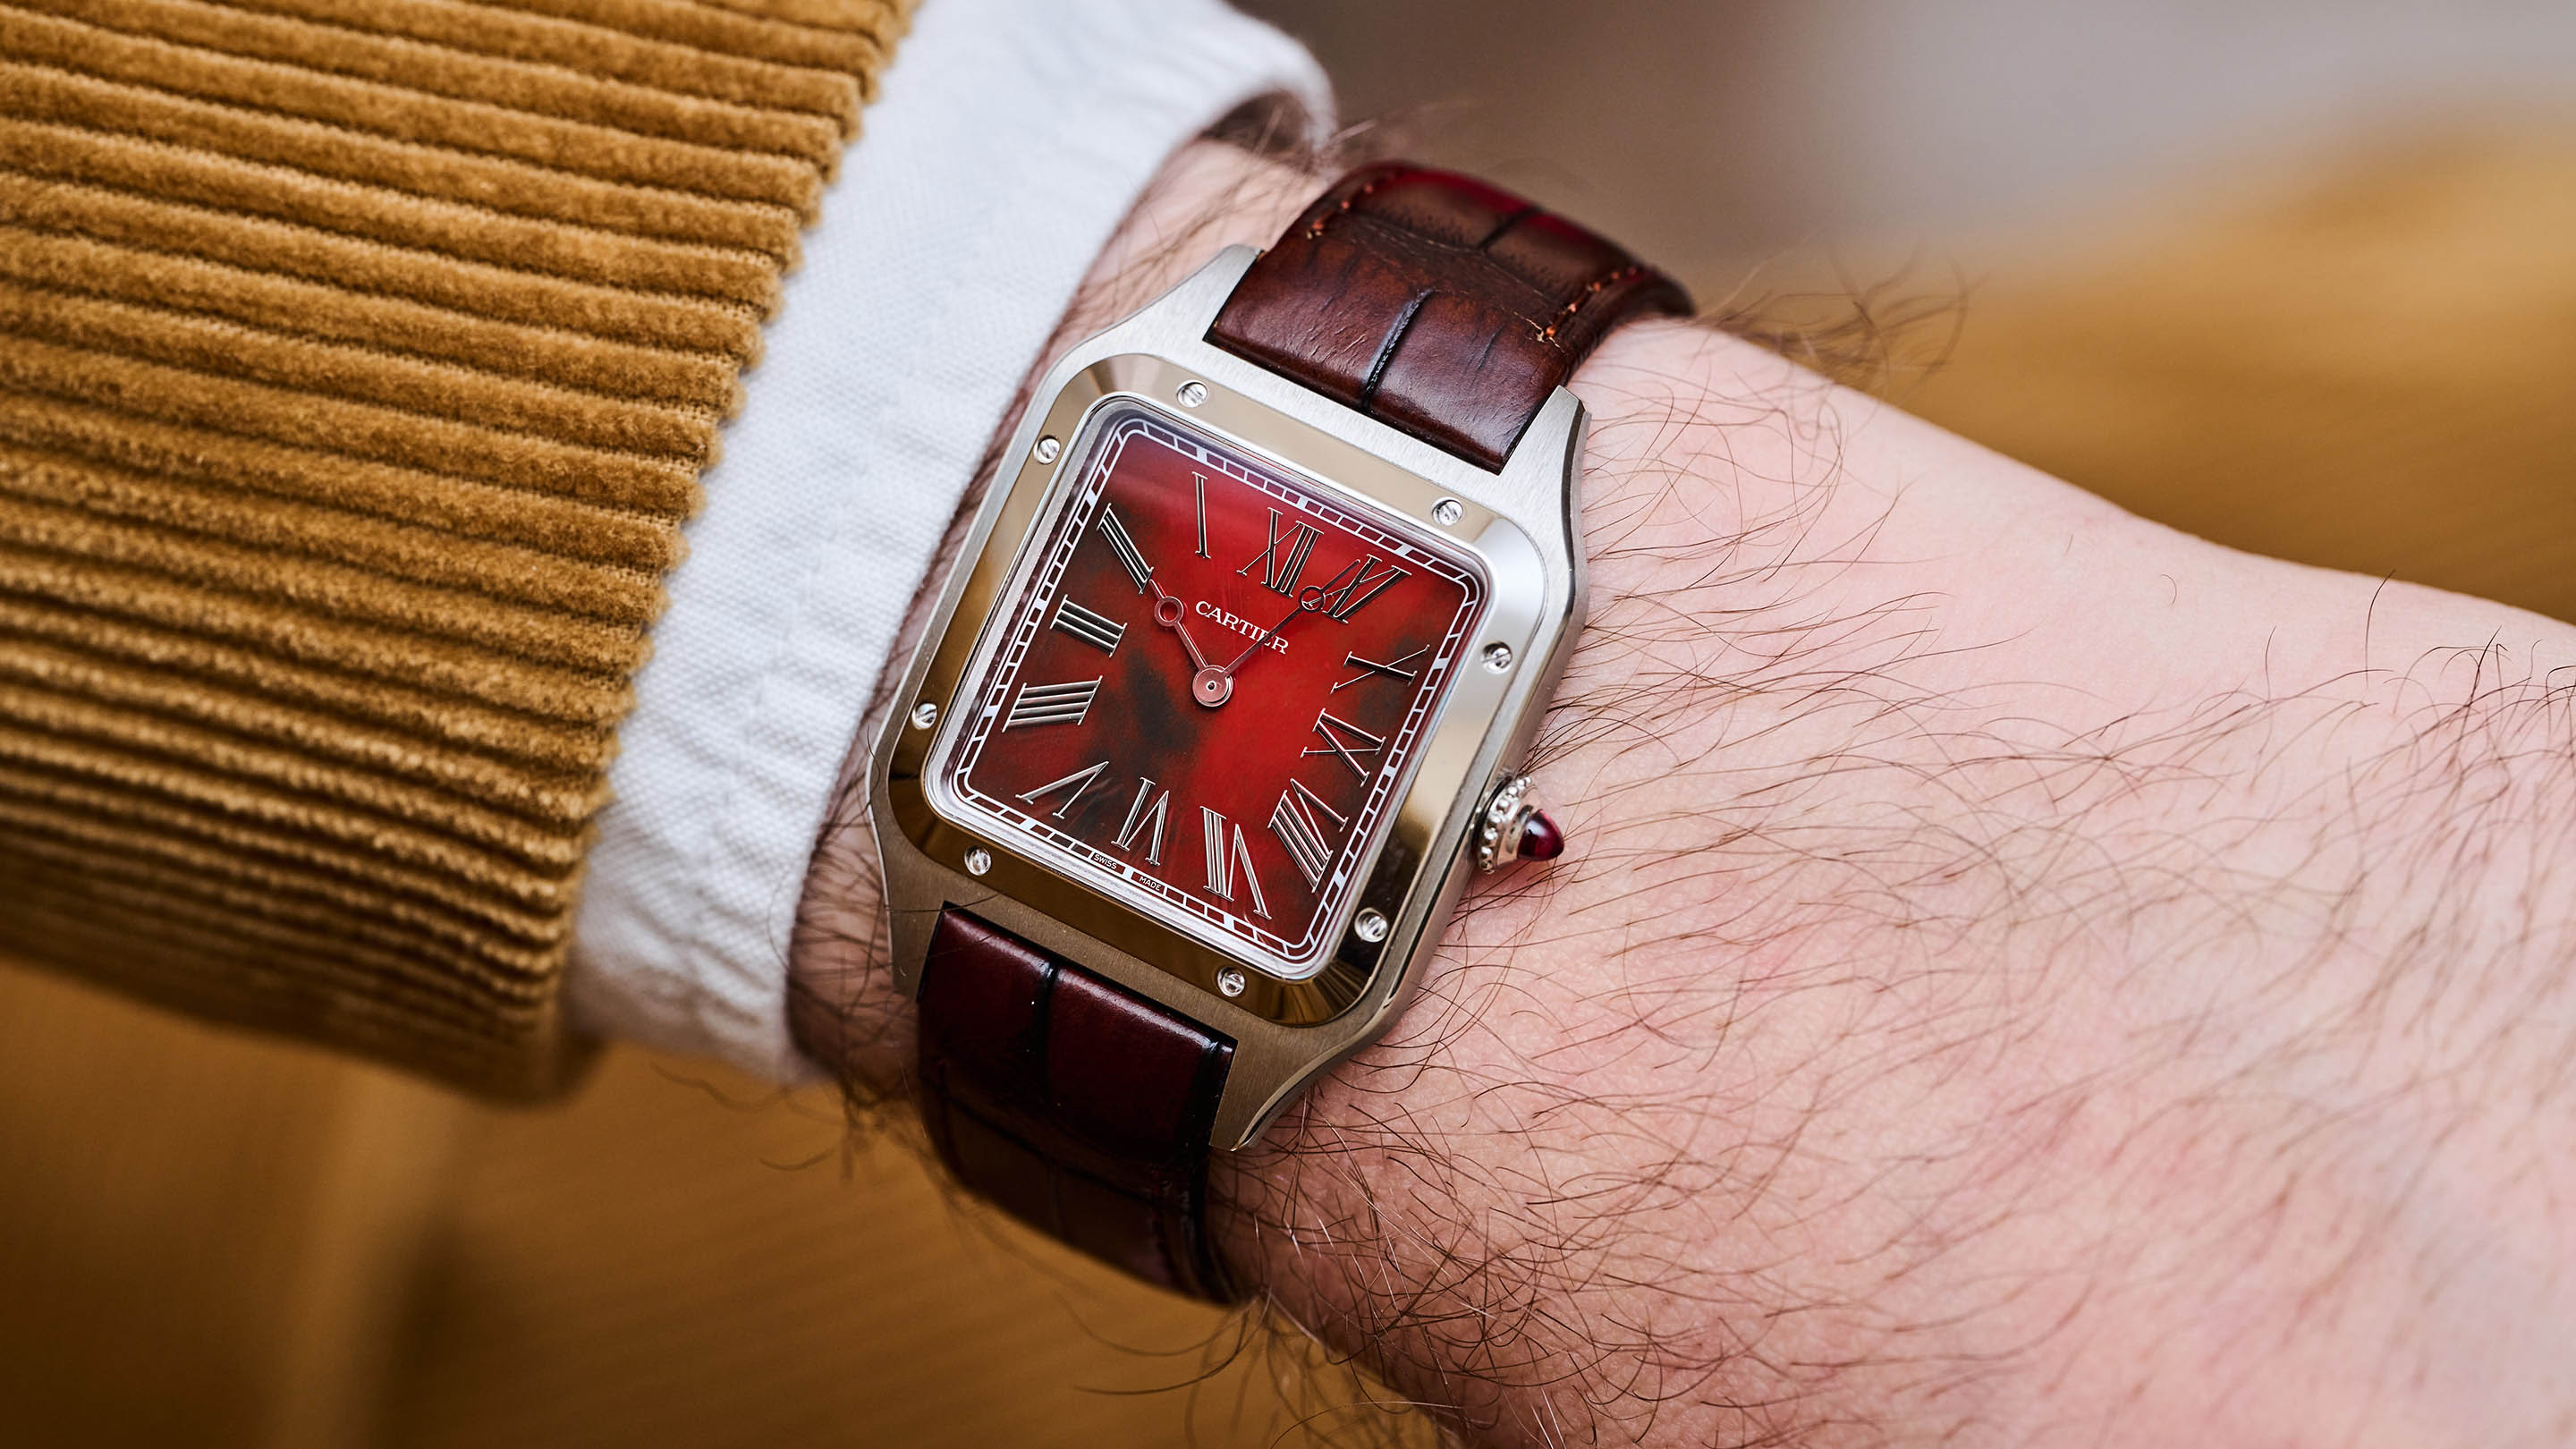 Cartier Santos-Dumont Rewind: Kim đồng hồ chạy ngược, nhưng hóa ra cực kỳ hữu ích